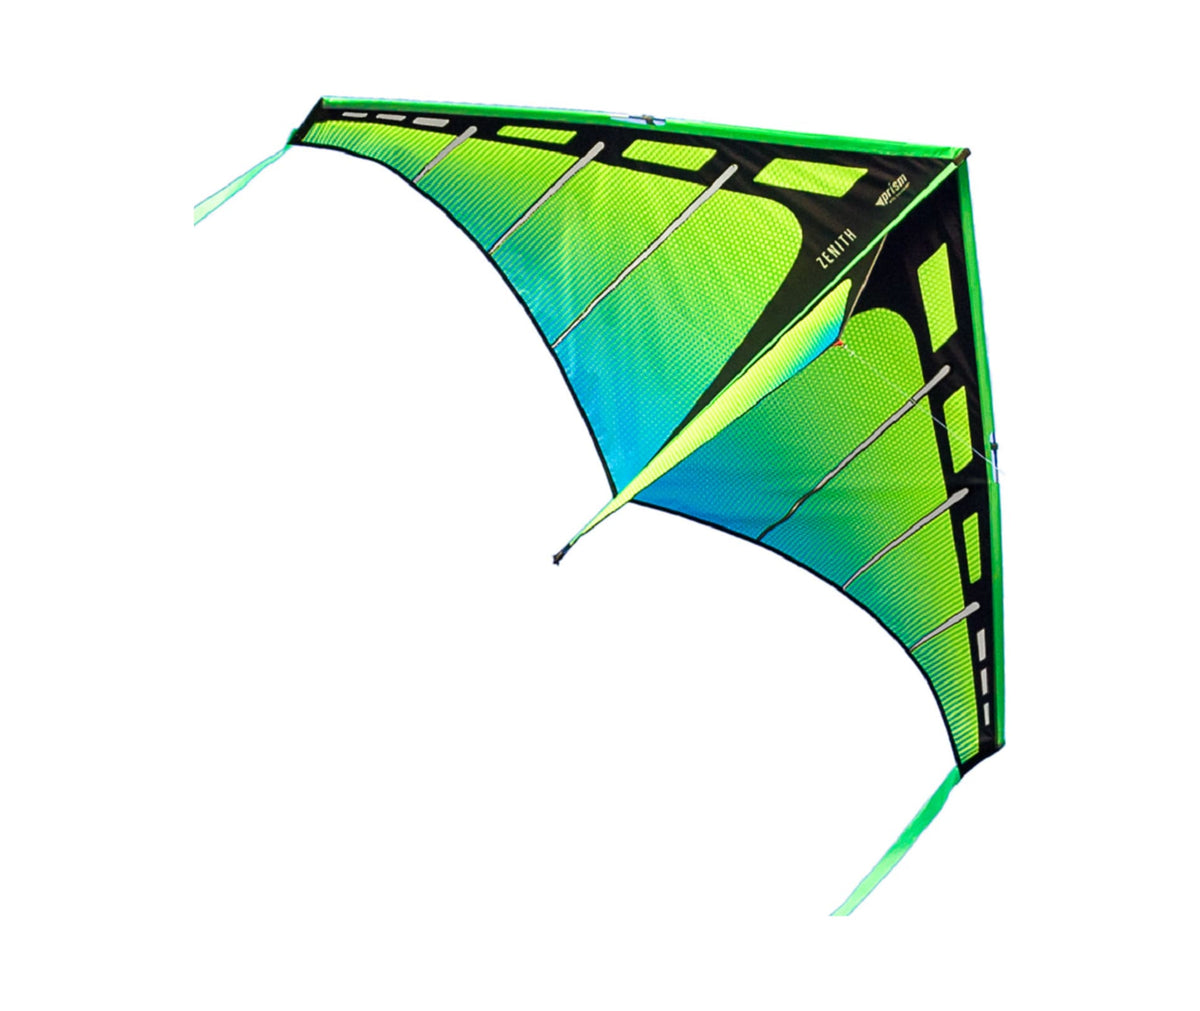 Prism - Zenith 7 Stunt Kite – Kitty Hawk Kites Online Store